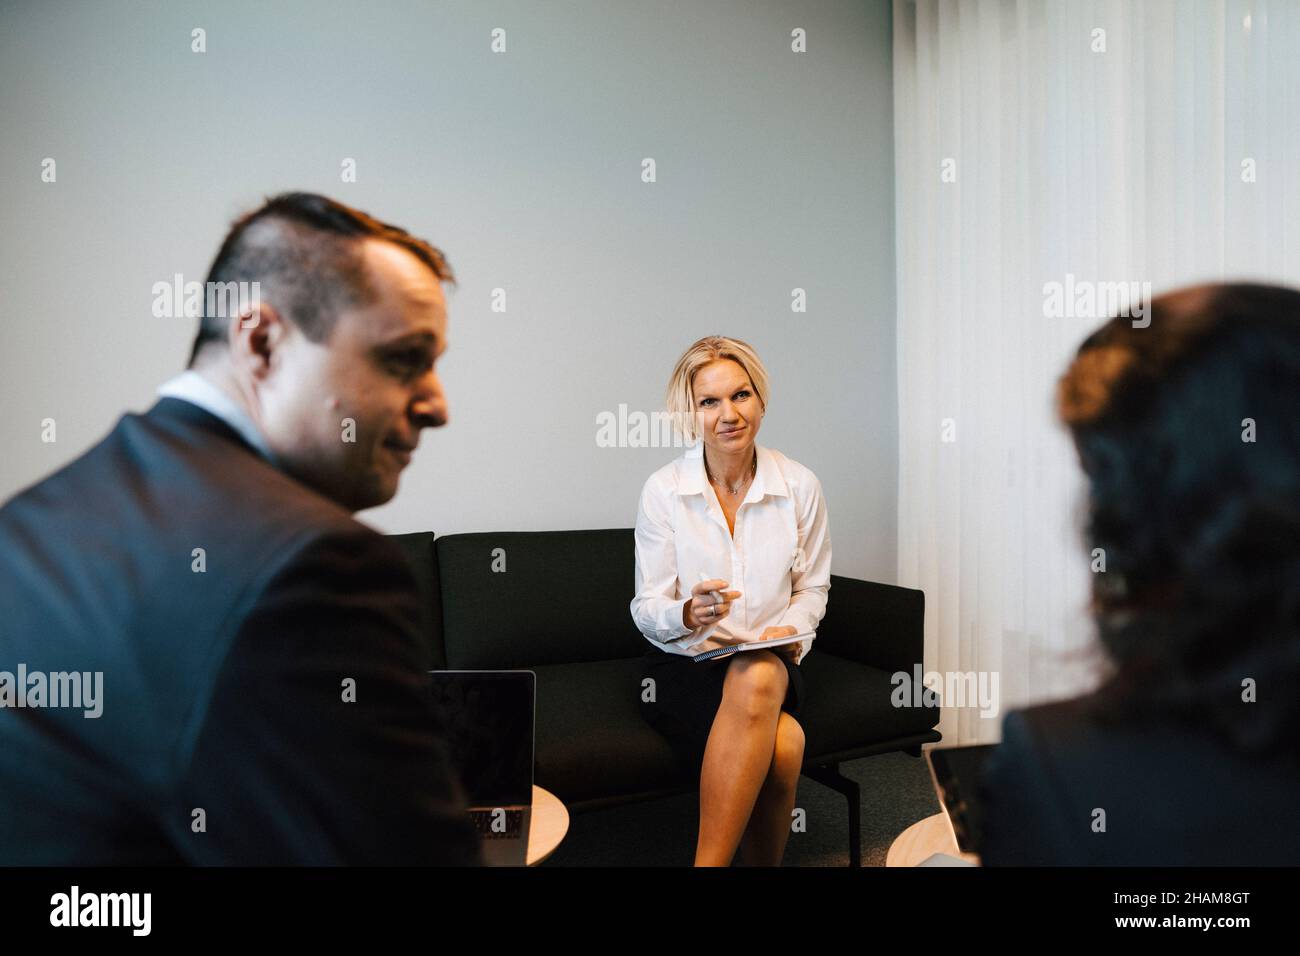 Las personas en reunión de negocios Foto de stock